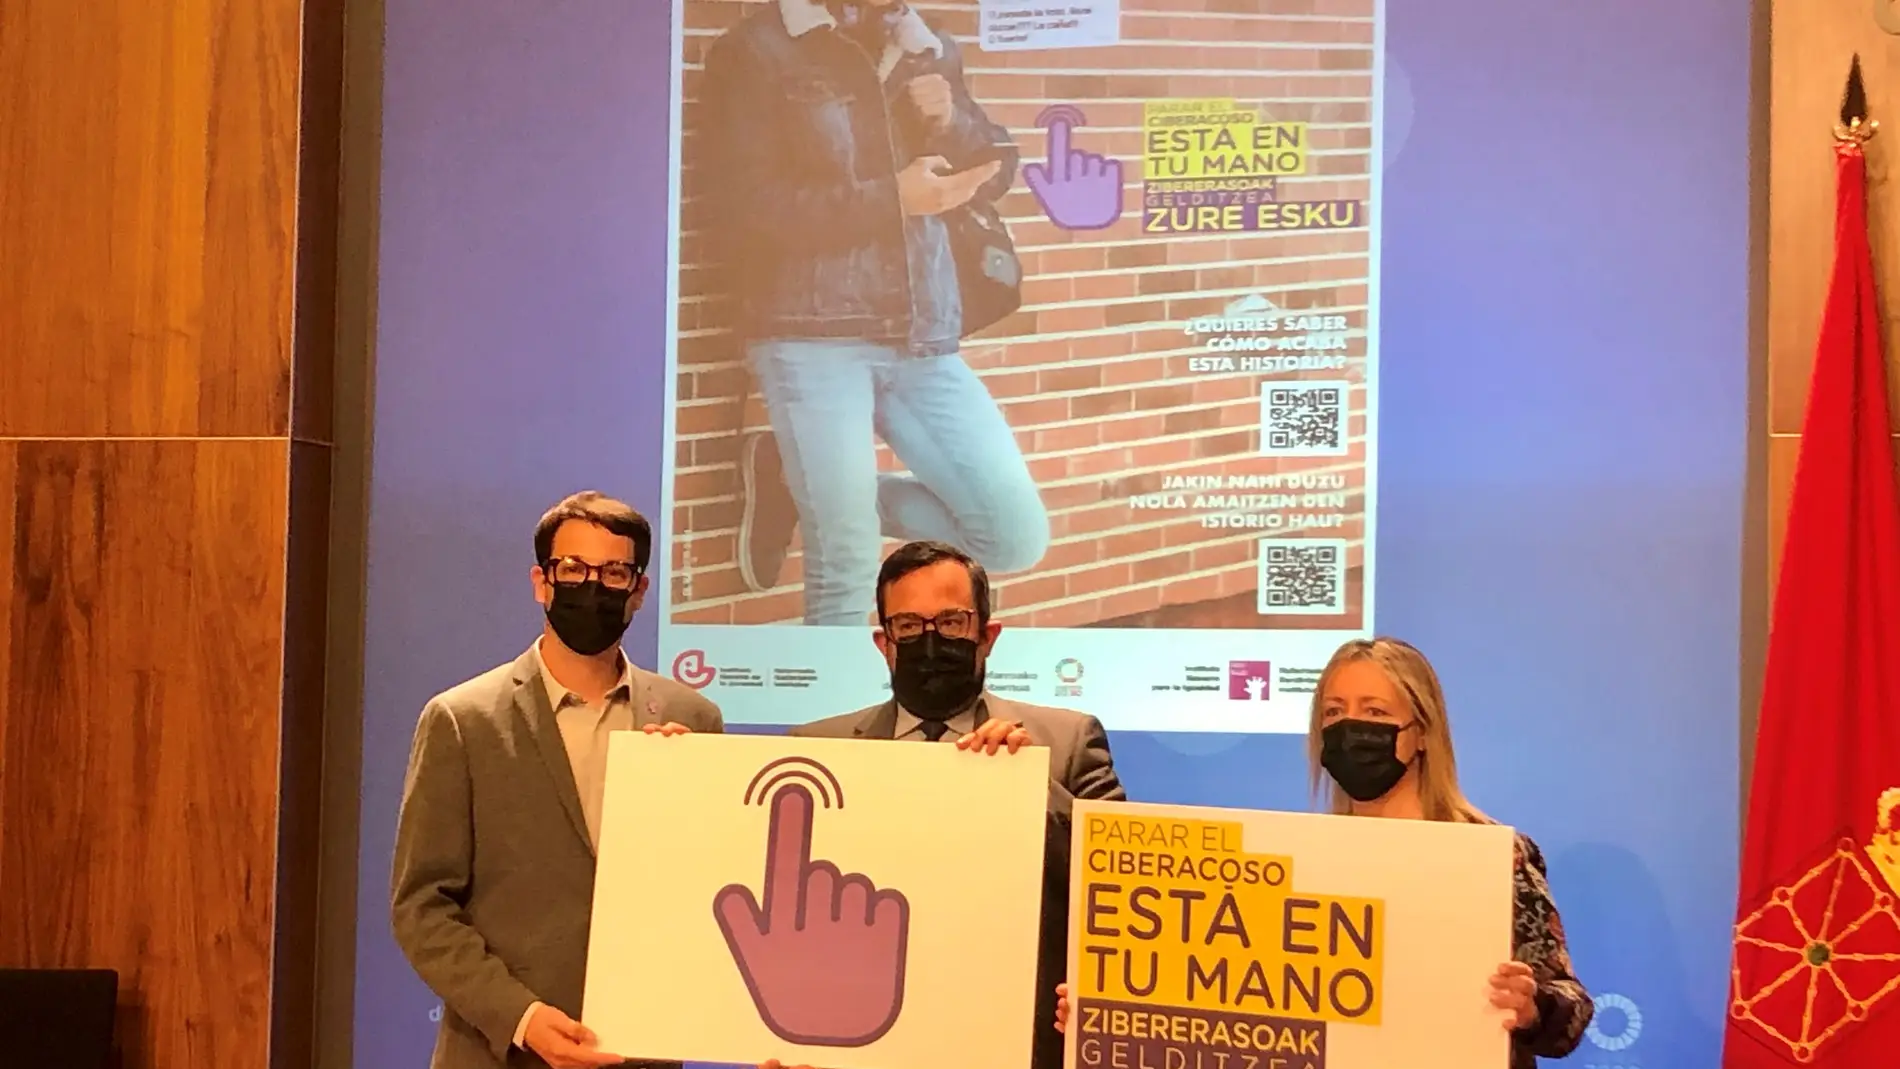 Navarra pone en marcha una nueva campaña de prevención: “Parar el ciberacoso está en tu mano”